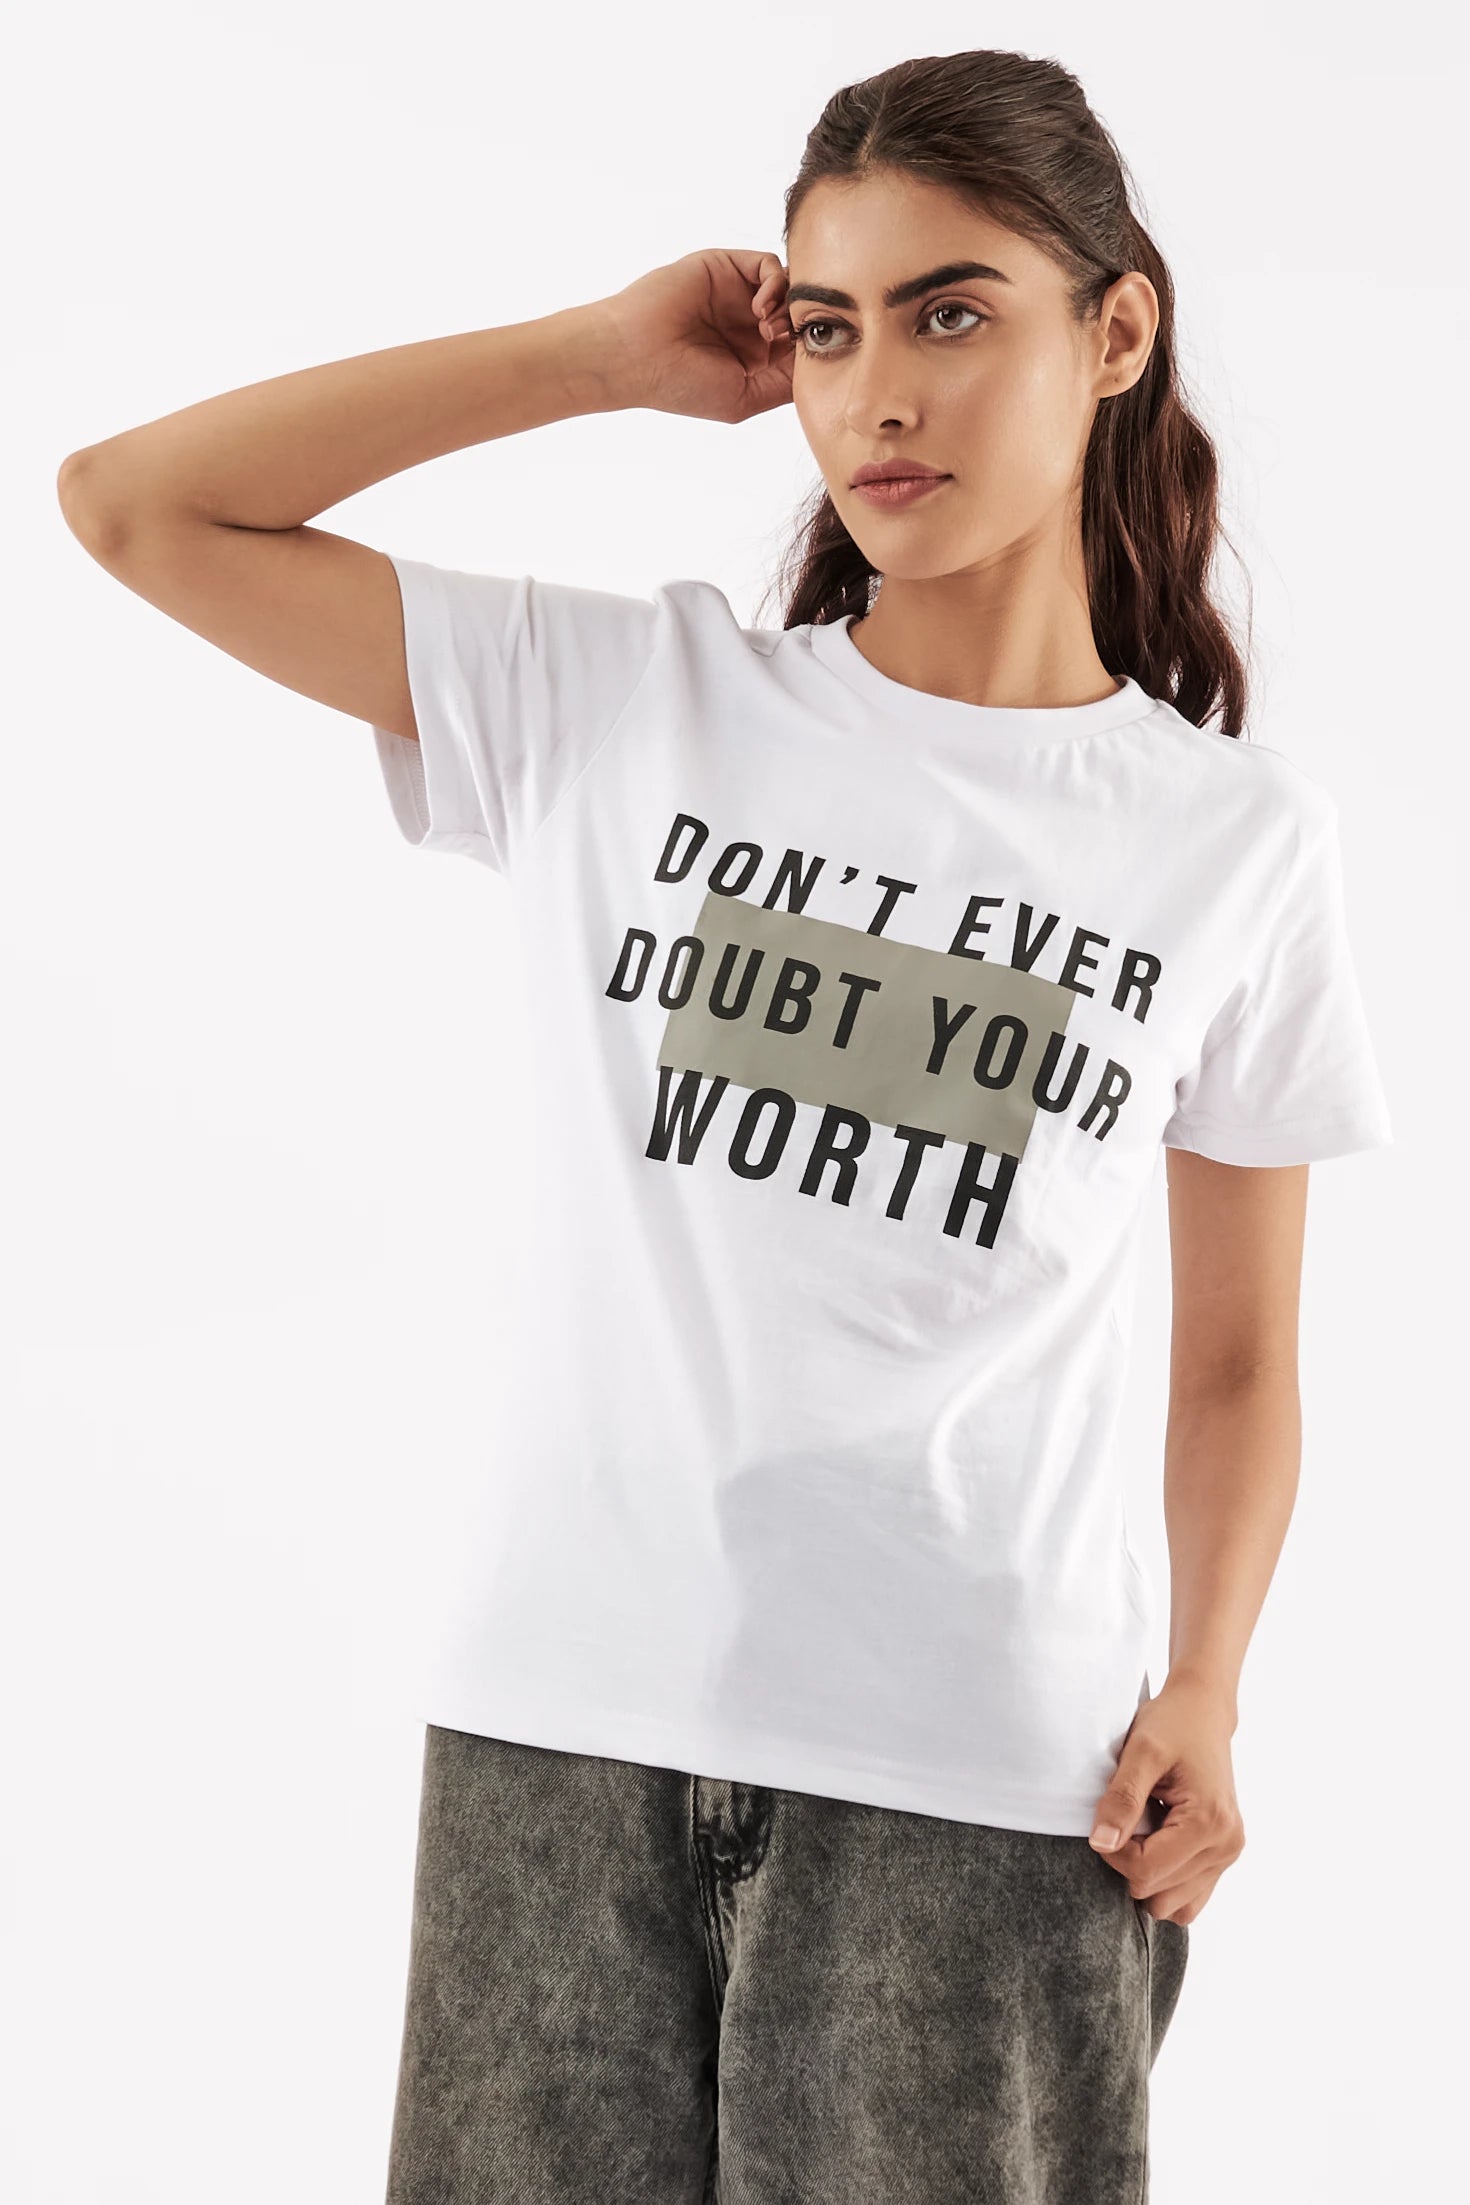 Women's Statement T-Shirt White